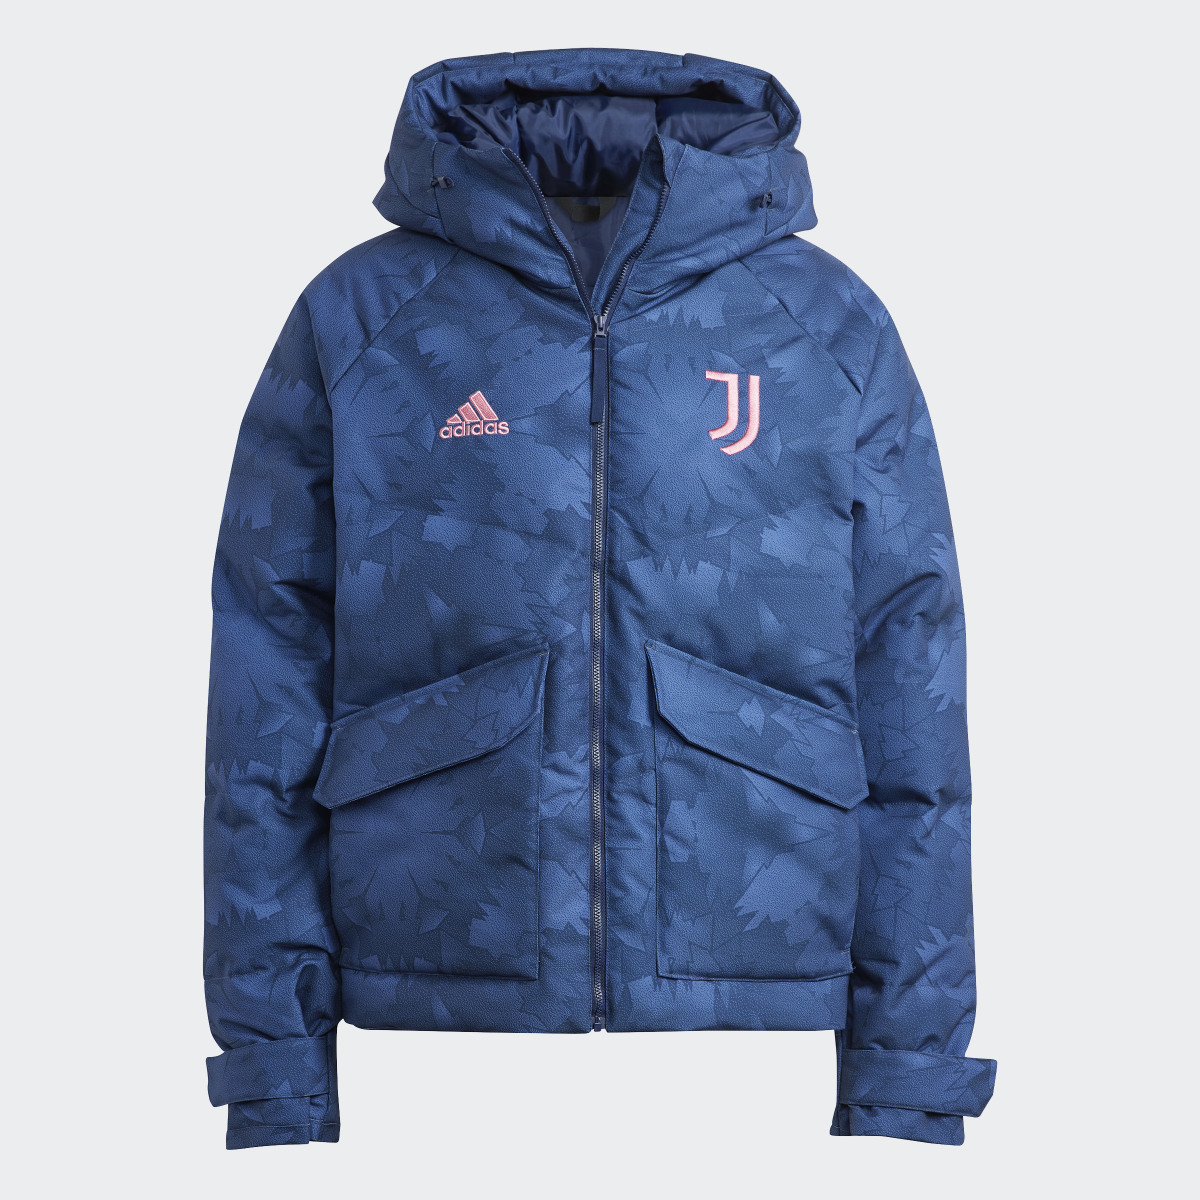 Adidas Juventus Lifestyler Down Jacket. 5